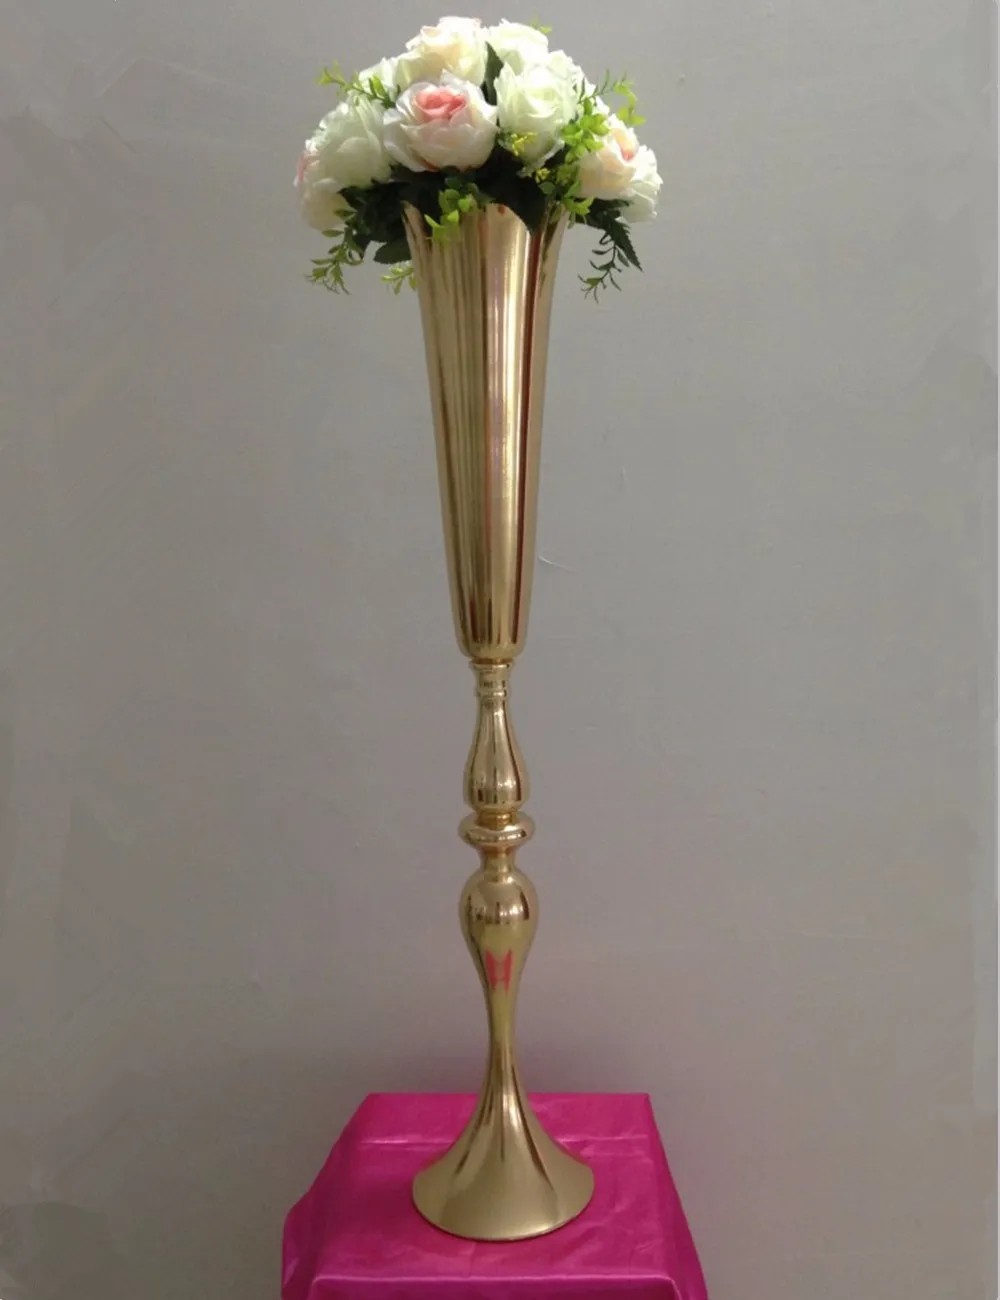 2019 Royal Gold Silverの背の高い大きな花の花瓶の結婚式のテーブルセンターピースの装飾パーティーロード鉛フラワーホルダーメタルフラワーラックのためのDiyイベント